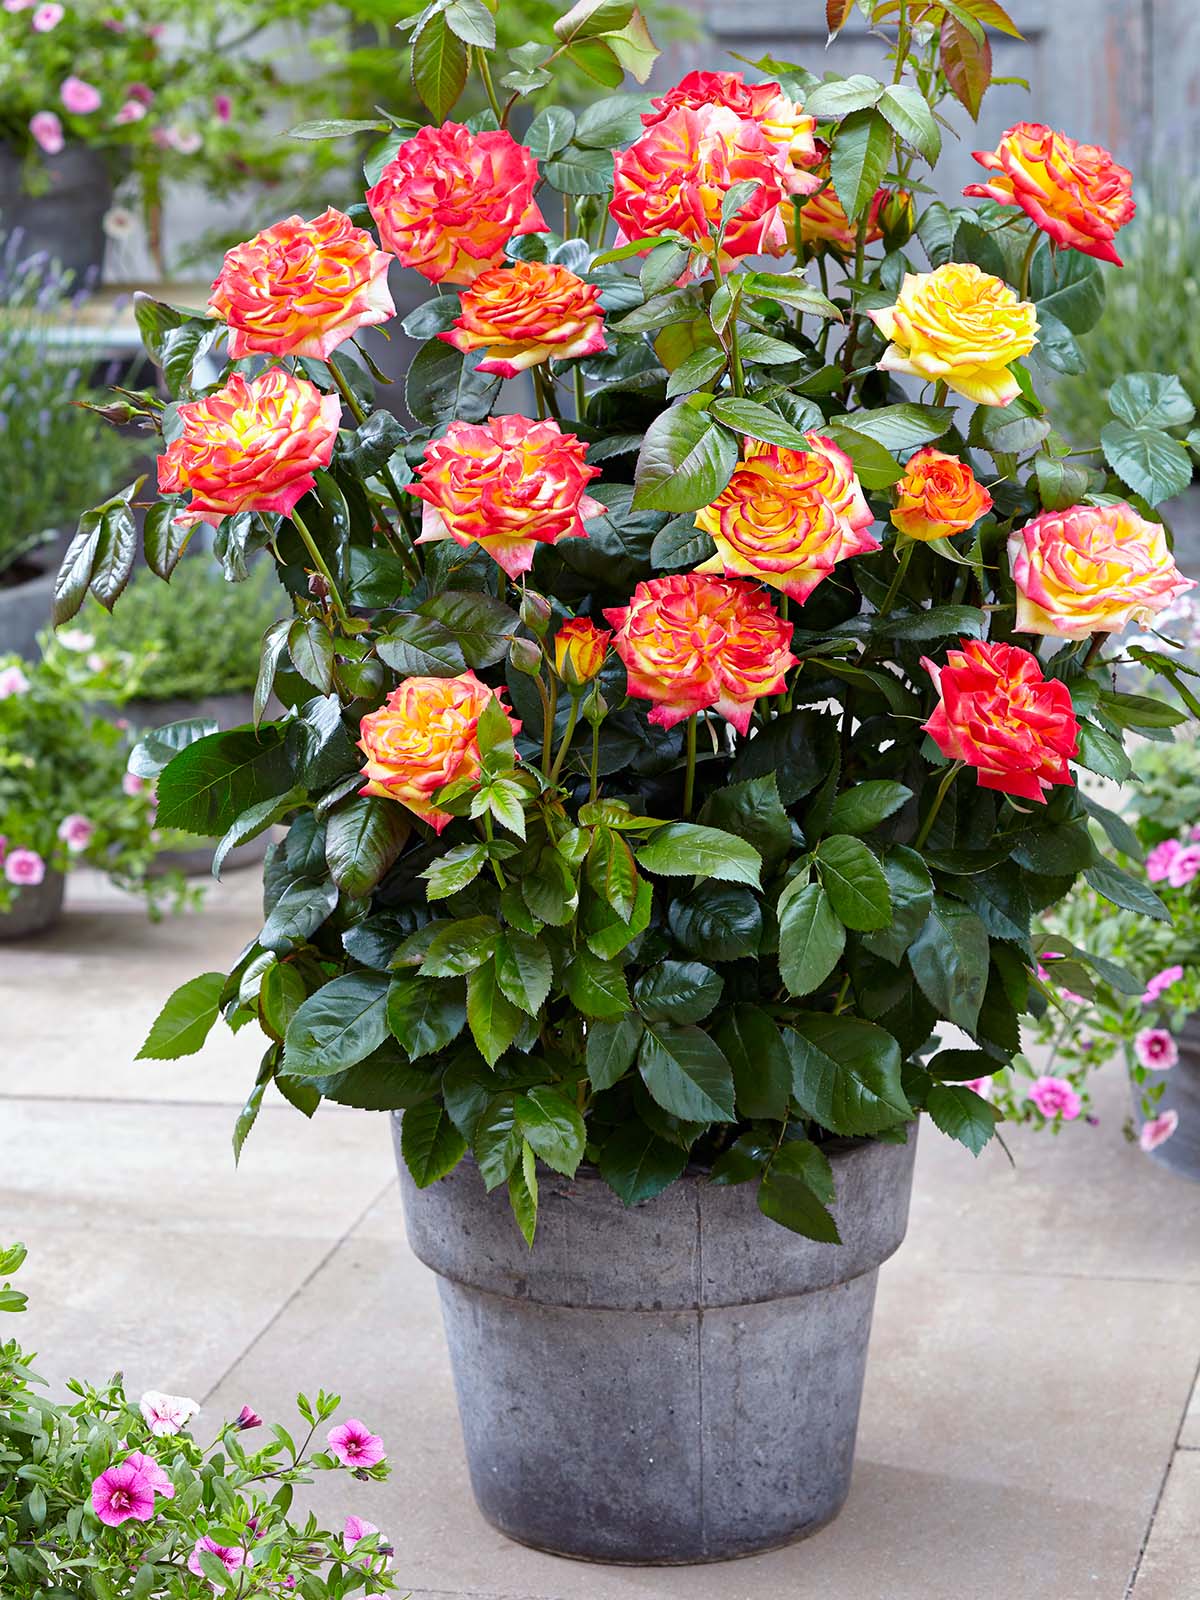 Rose Twister Select patio pot on Thursd